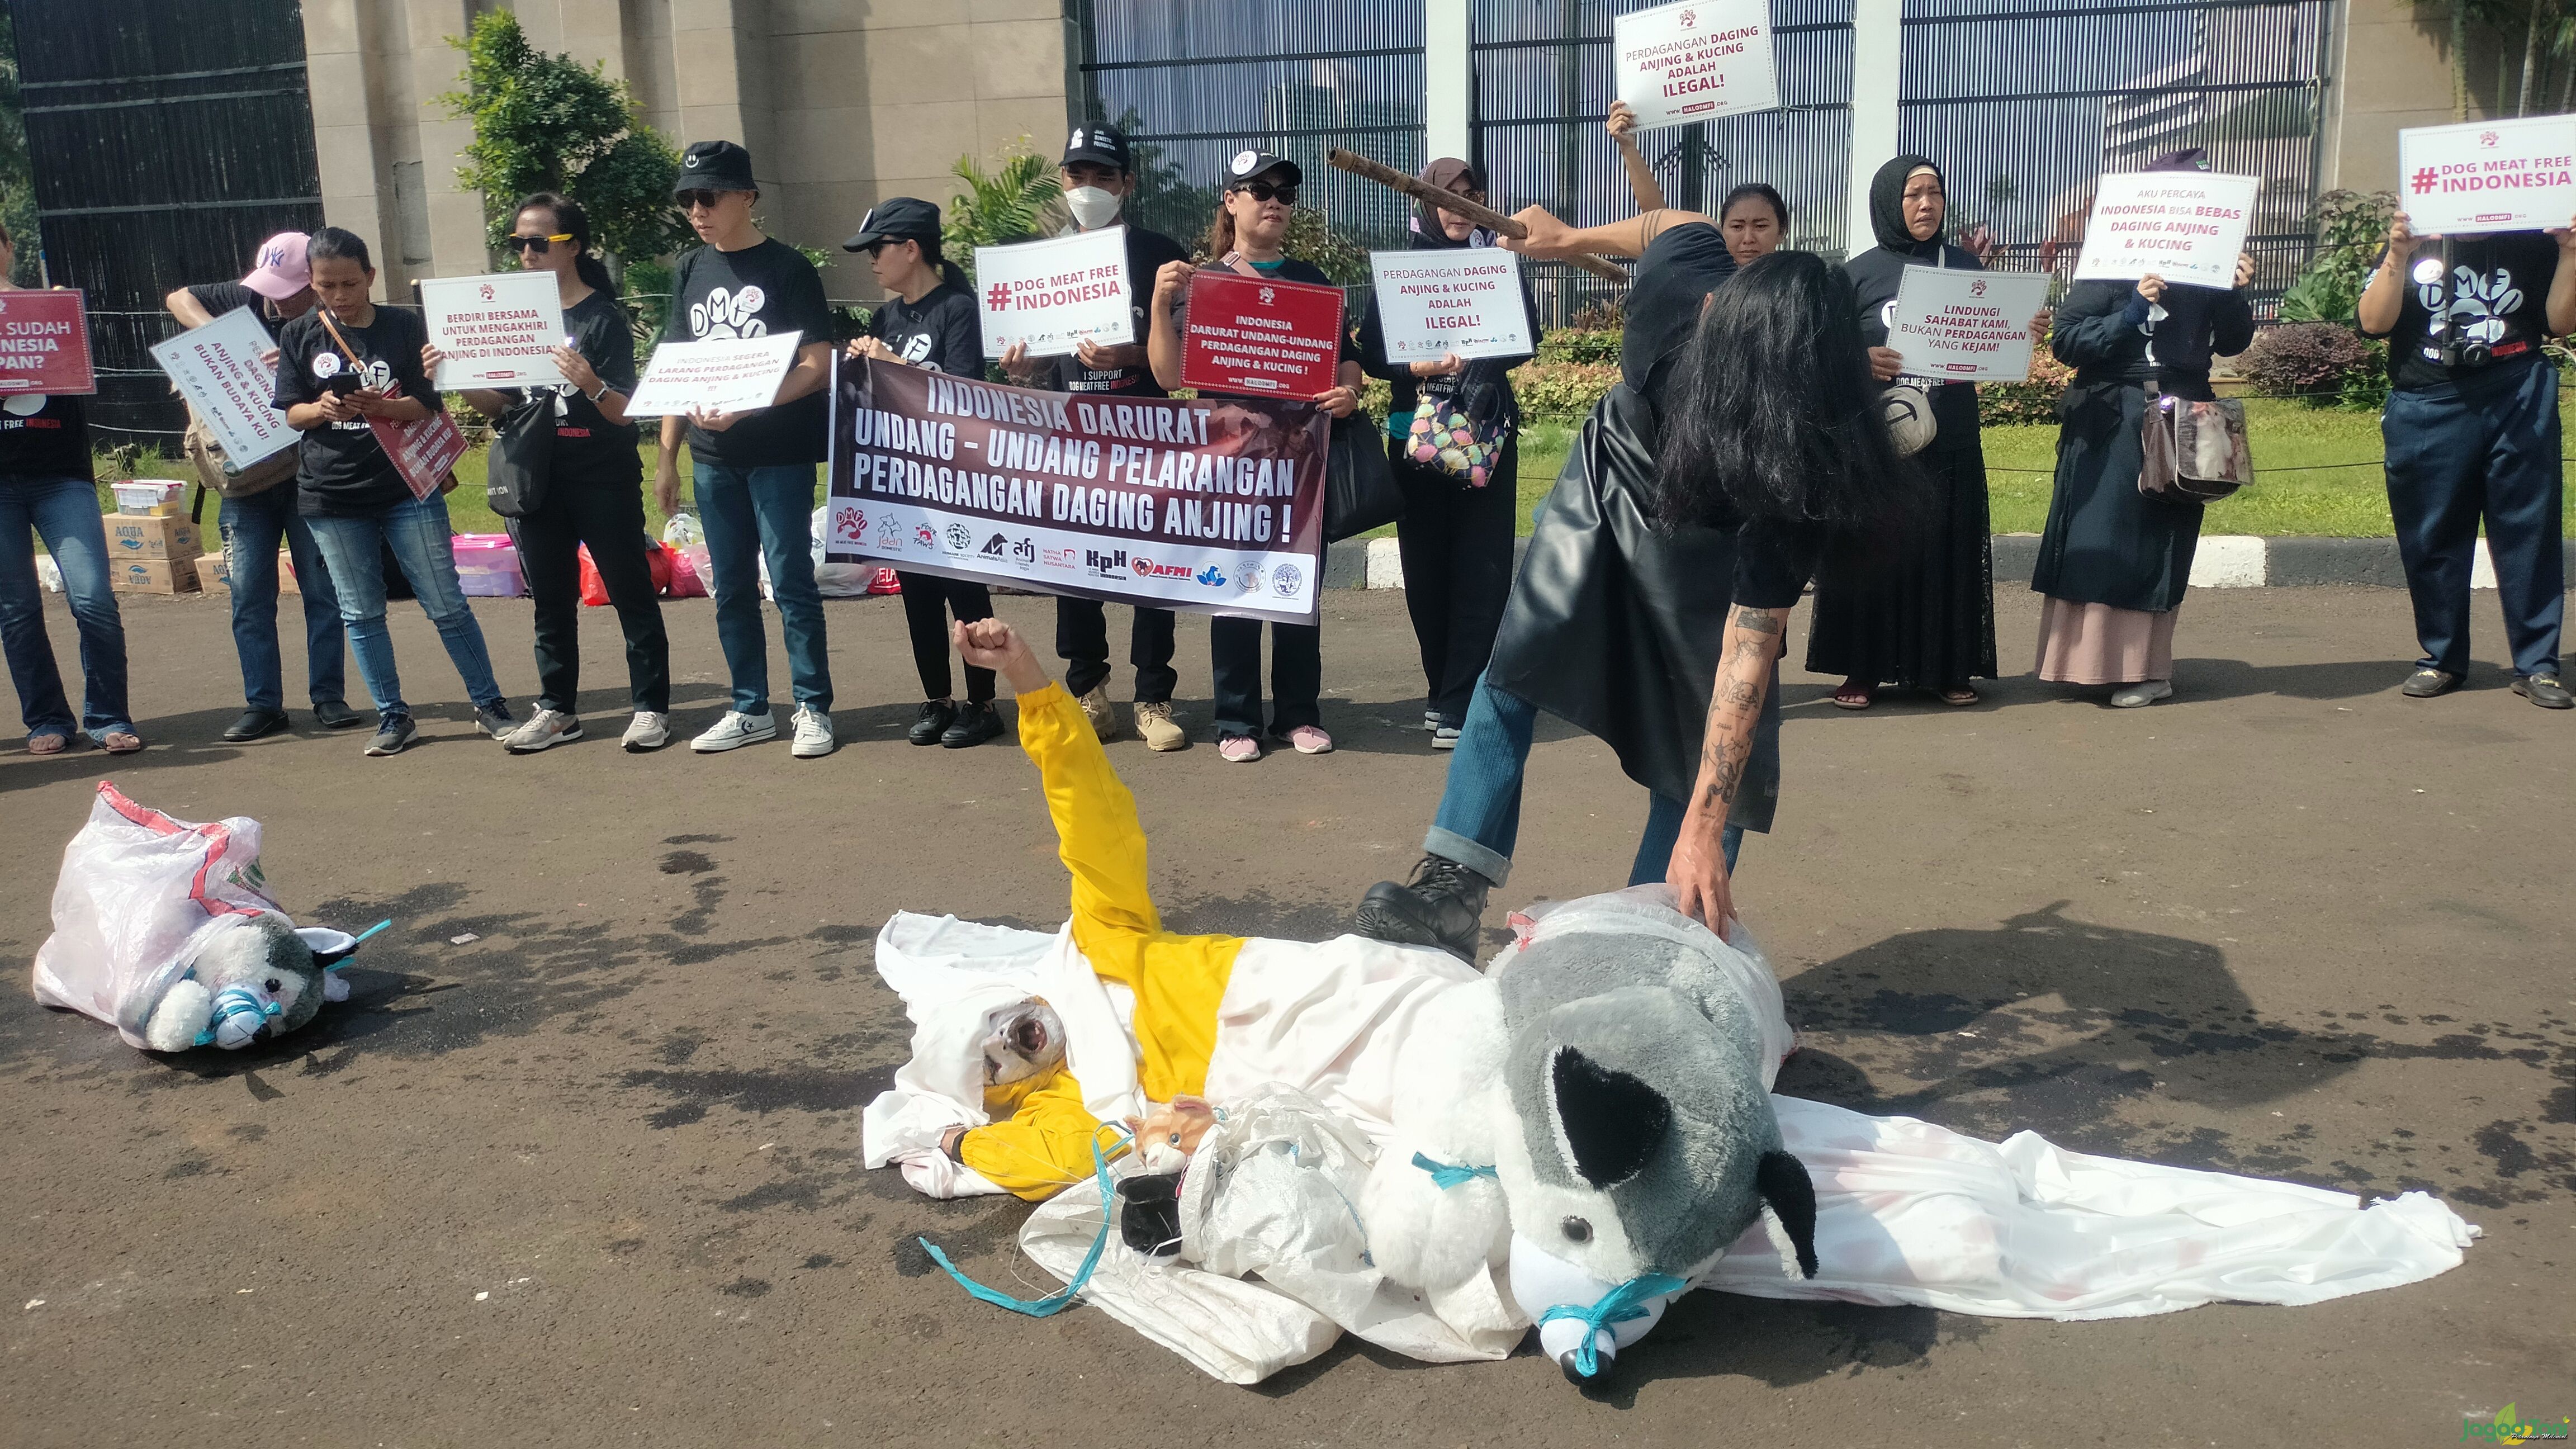 Aksi teatrikal dalam aksi damai Dog Meat Free Indonesia di depan gedung MPR - DPR Republik Indonesia